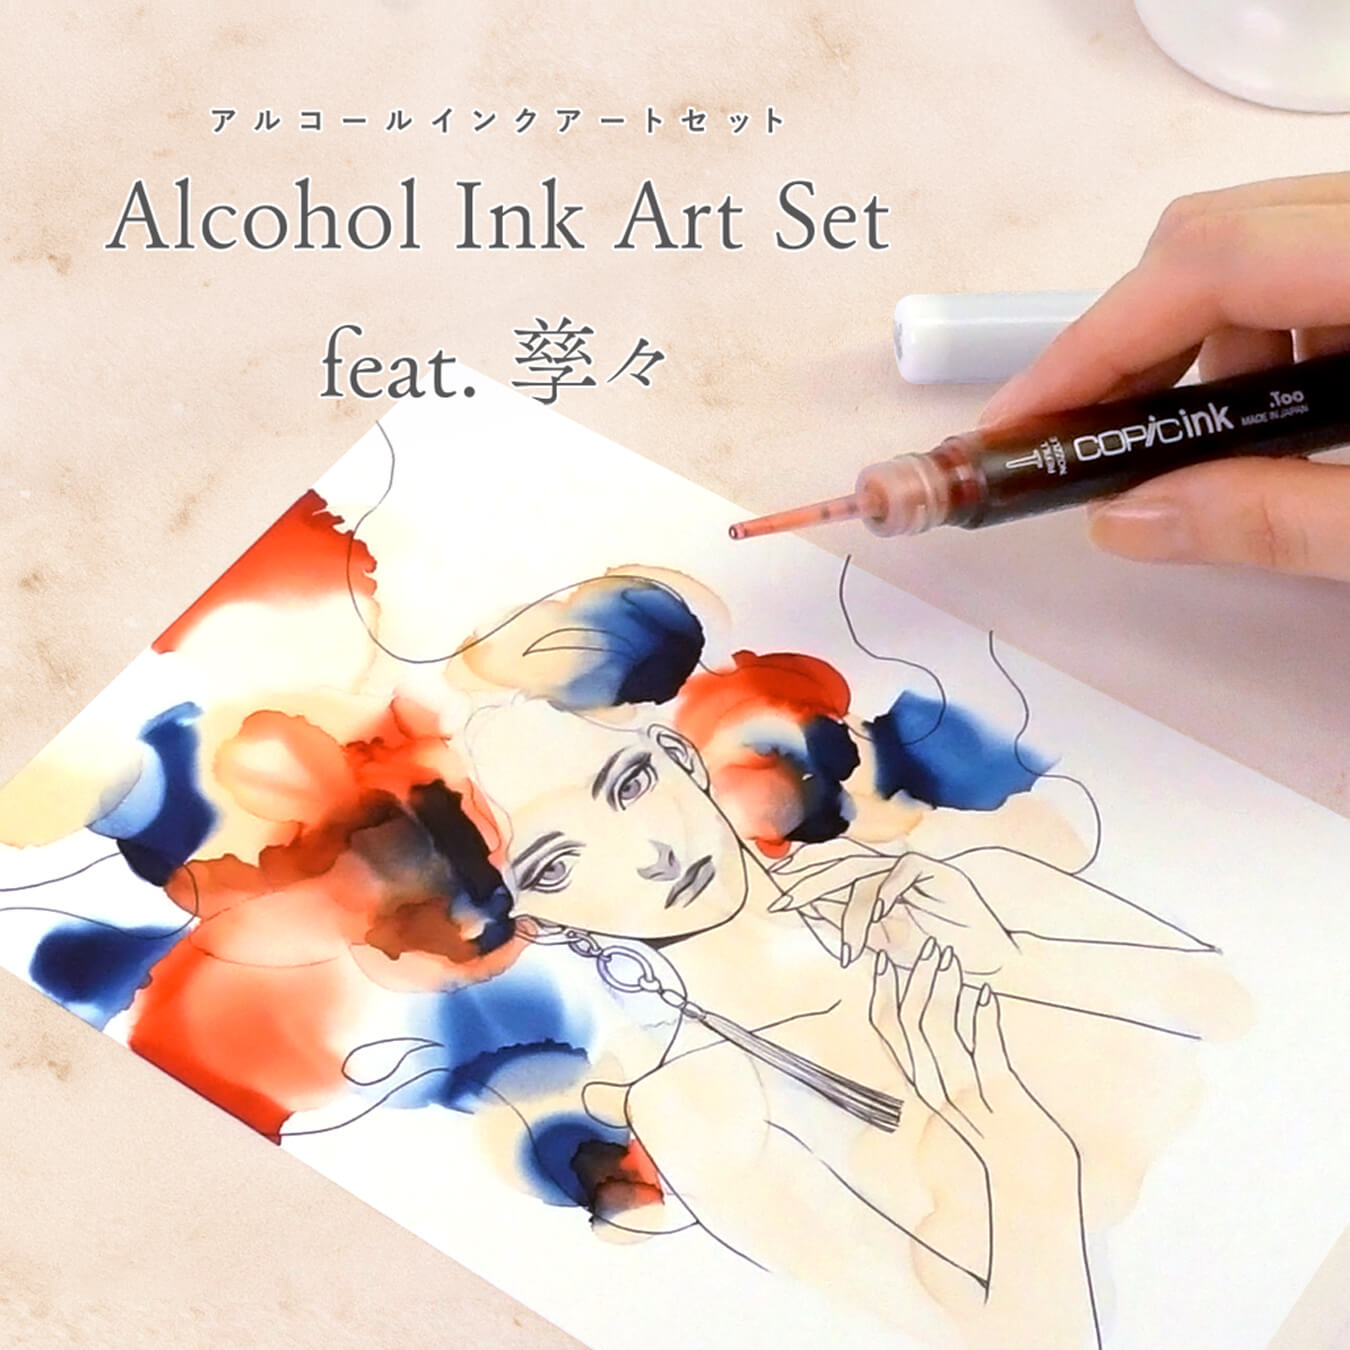 Alcohol Ink Art Set feat. 孳々」発売のお知らせ - コピック公式サイト